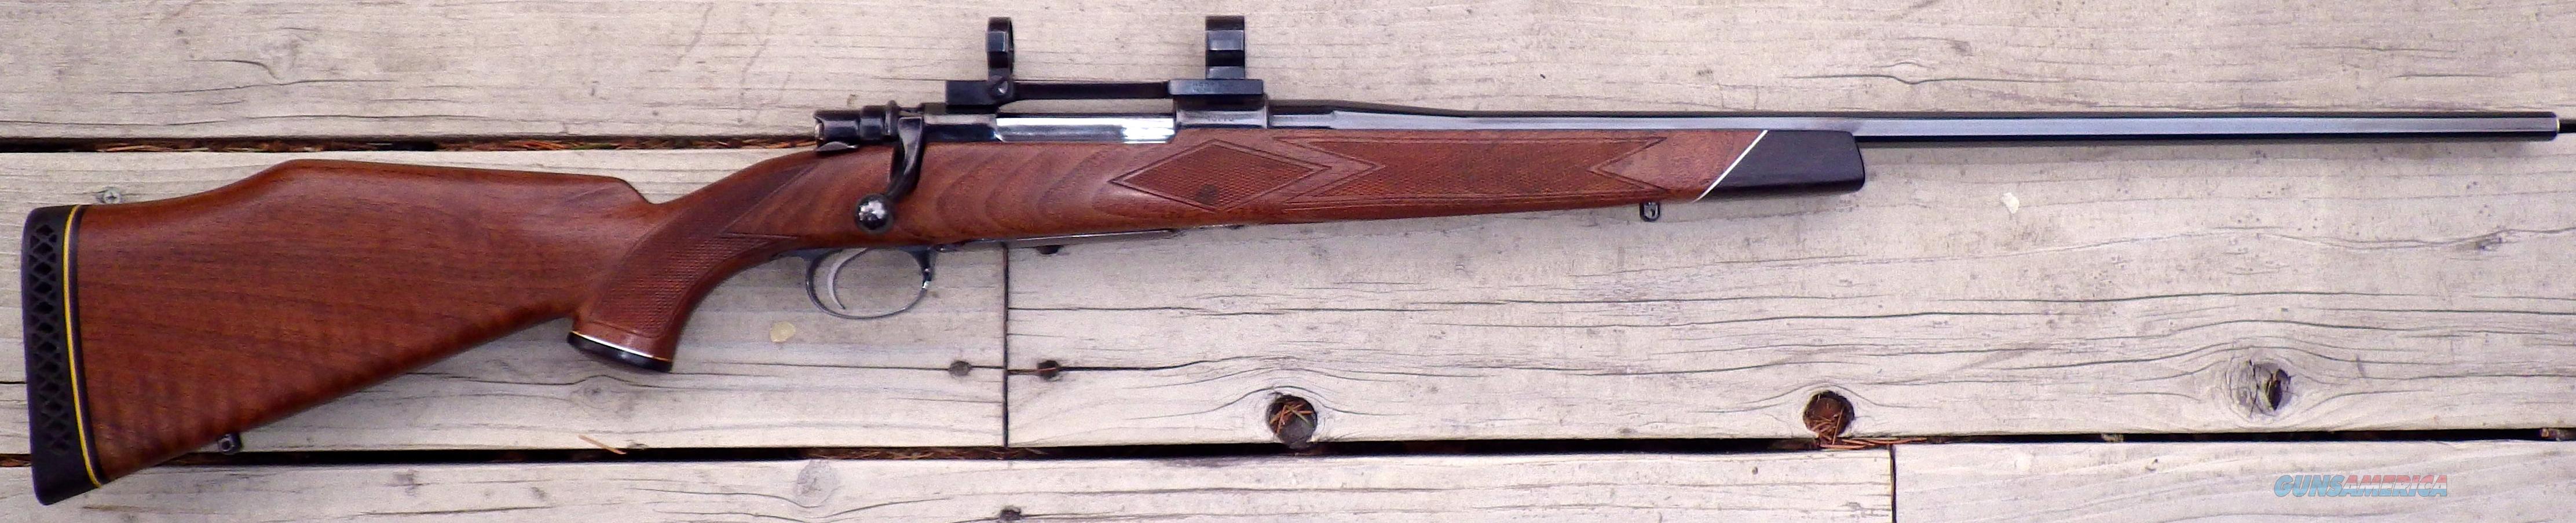 Weatherby vanguard rifles serial numbers